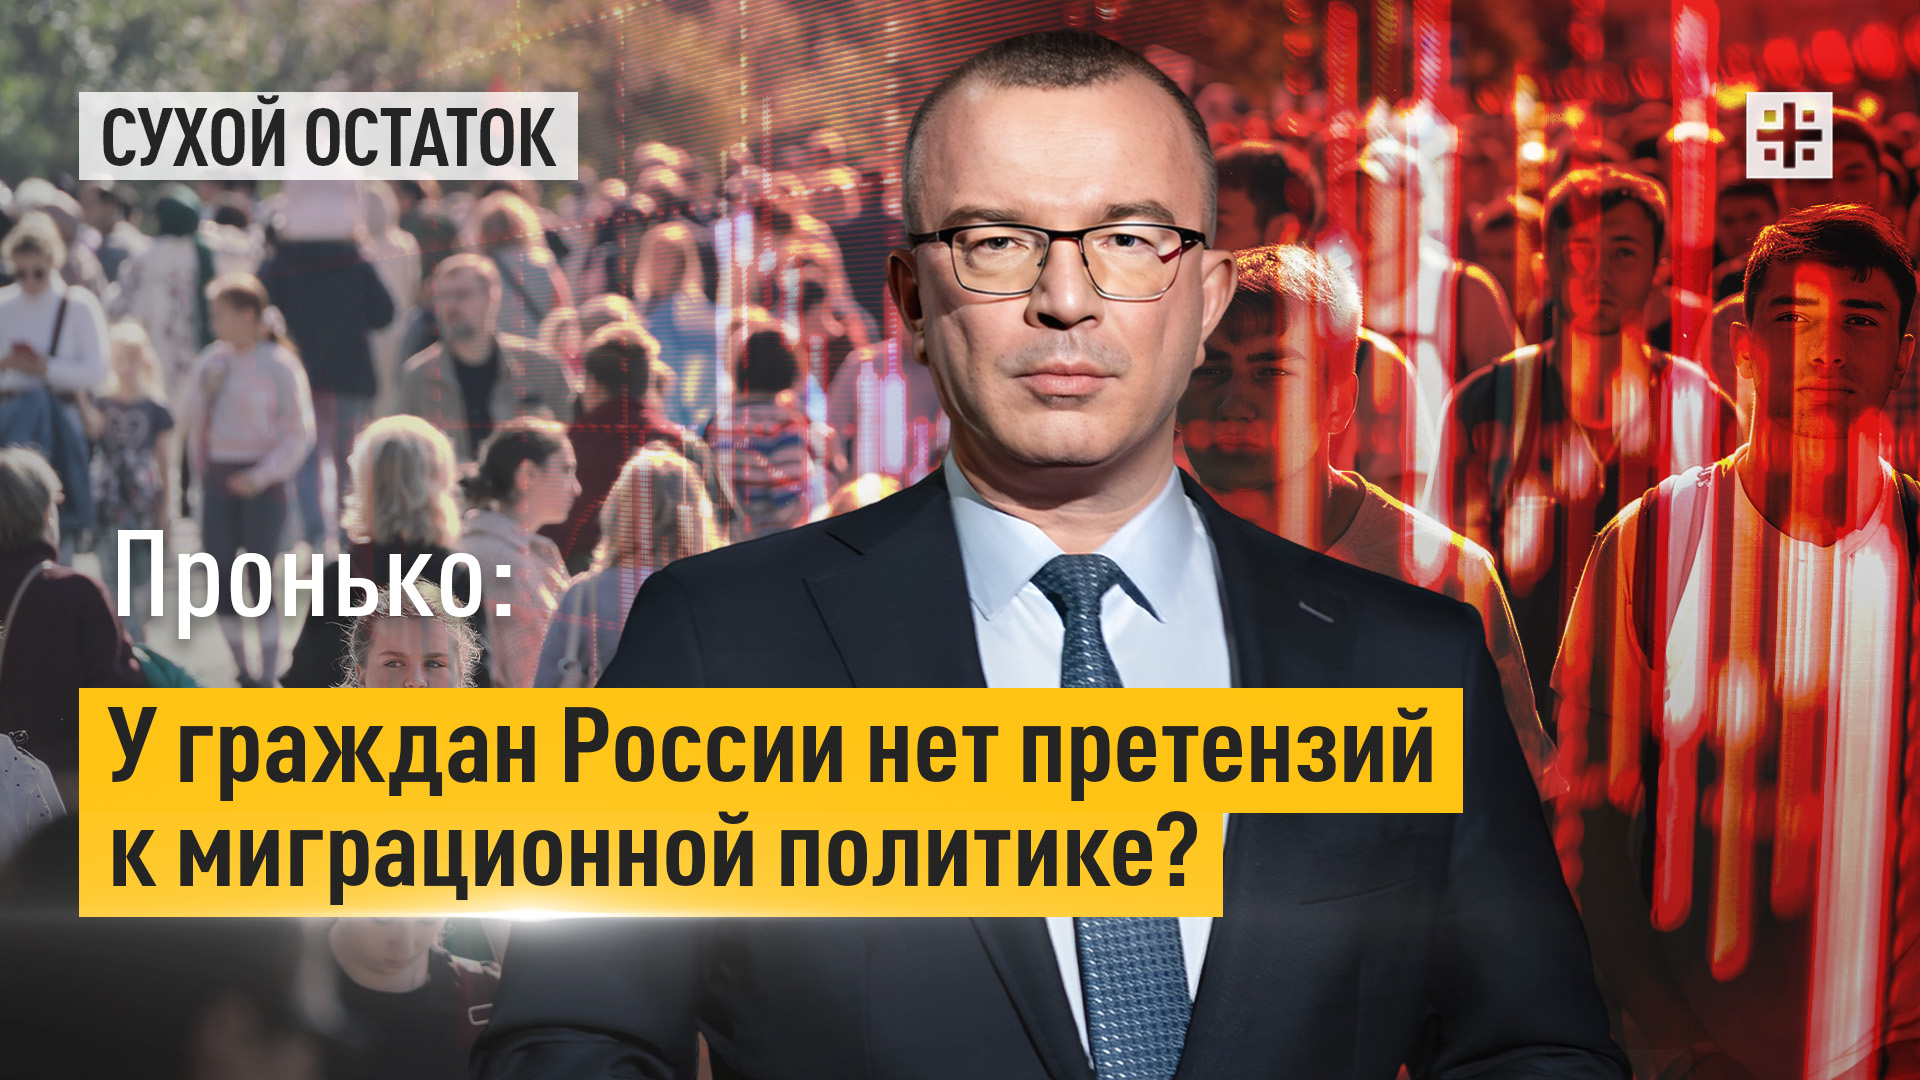 Пронько: У граждан России нет претензий к миграционной политике?